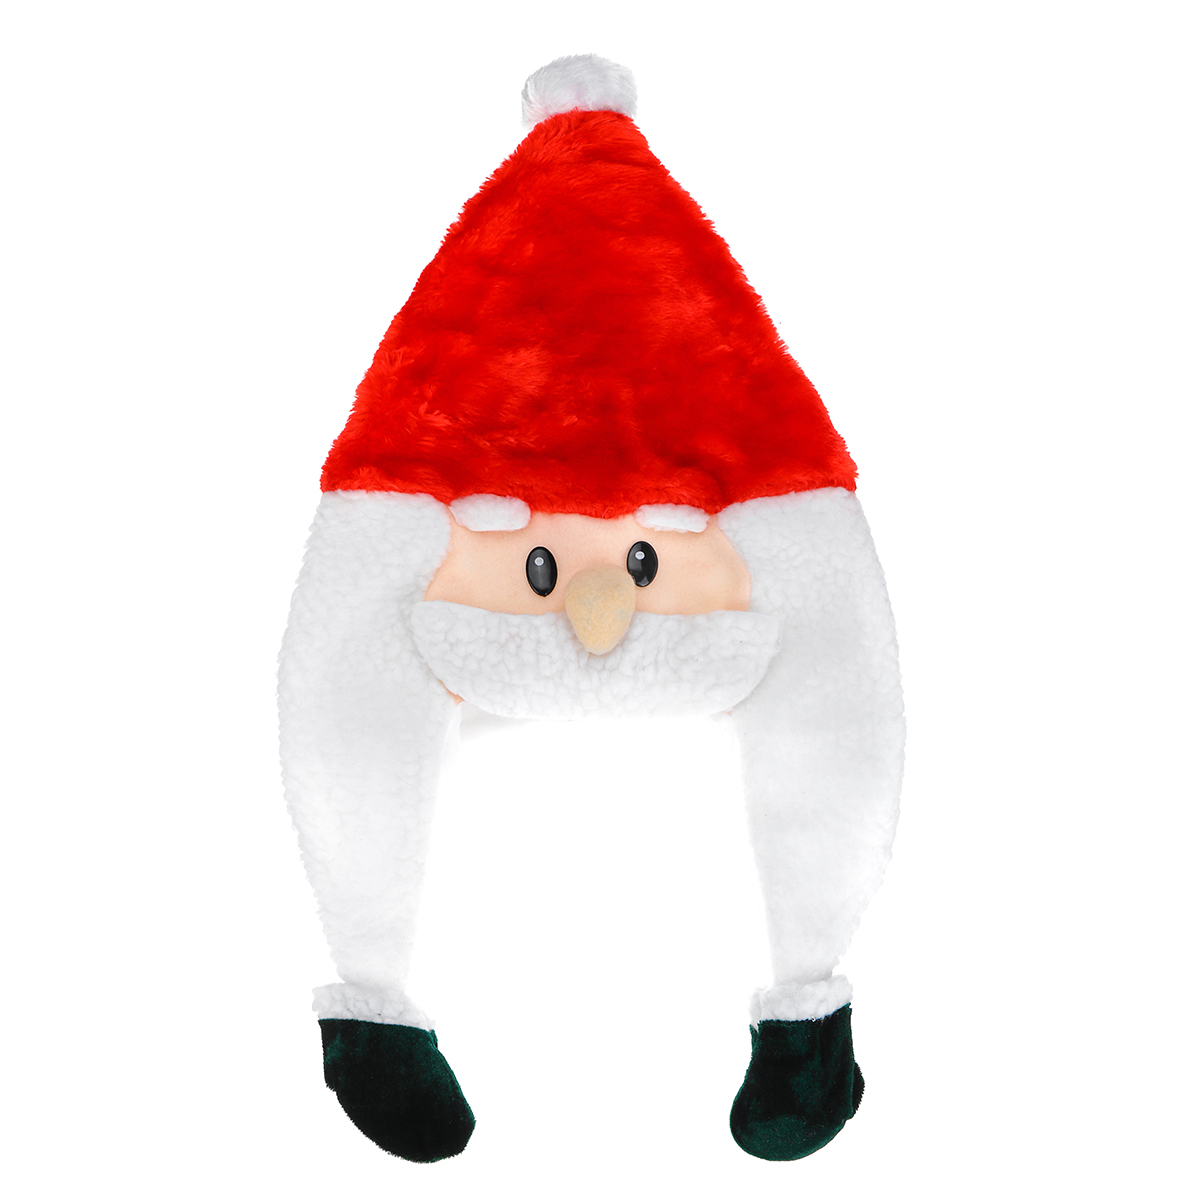 Unisex-Christmas-Xmas-Novelty-Plush-Hat-Santa-Claus-Hat-Holiday-Decoration-1747495-5